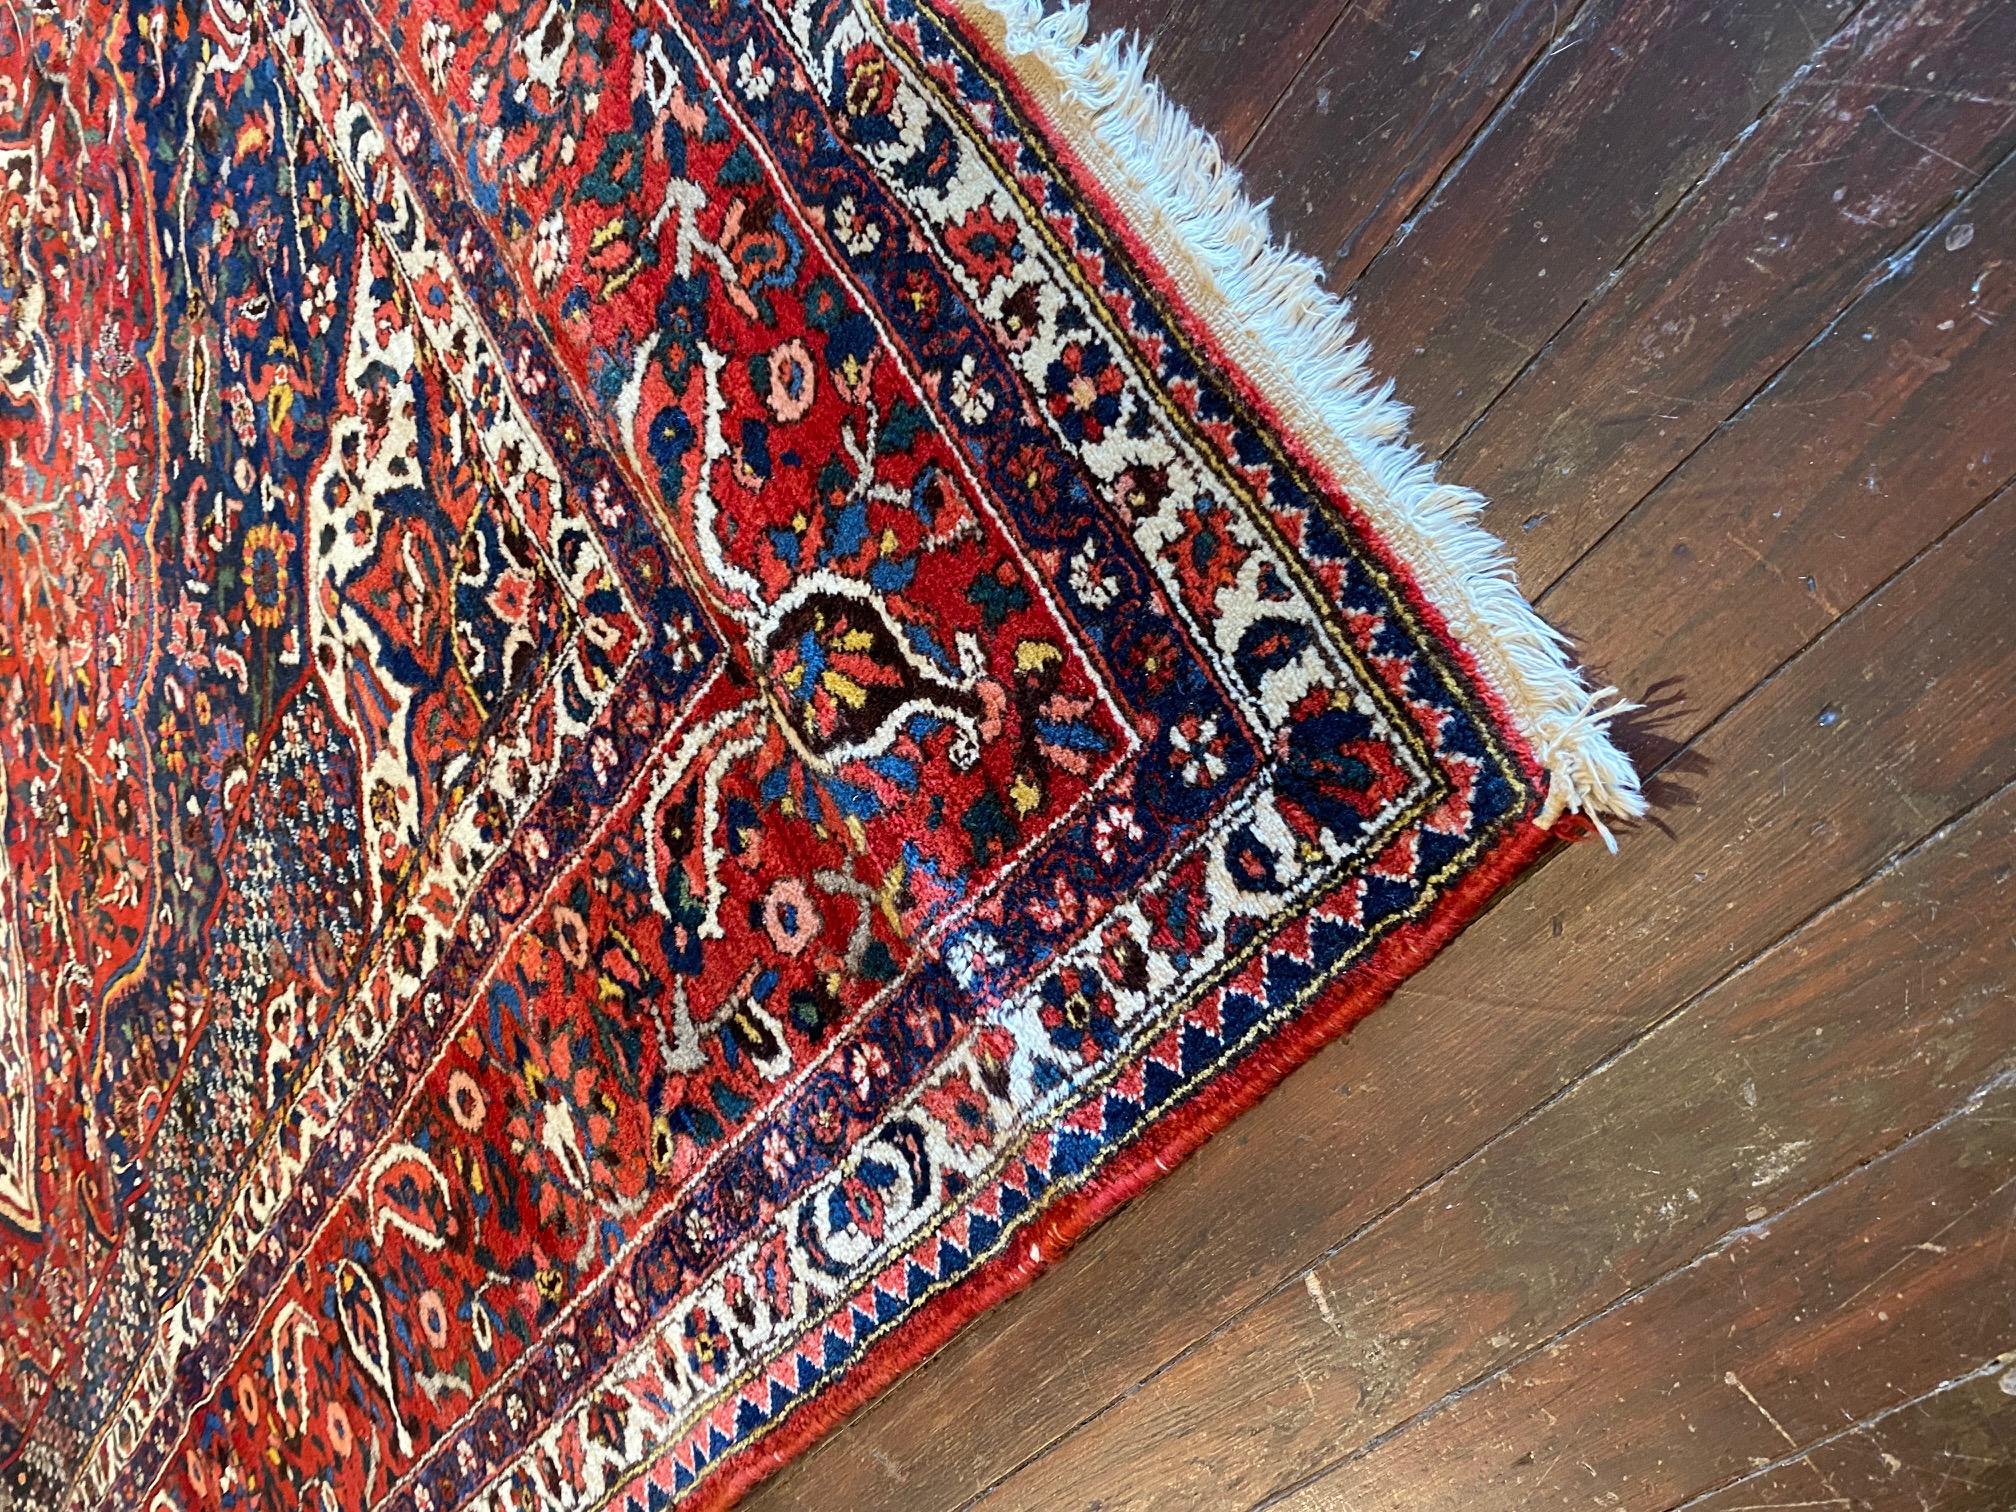 Entdecken Sie den exquisiten Charme des persischen Bakhtiyar-Teppichs aus dem frühen zwanzigsten Jahrhundert, ein außergewöhnliches Meisterwerk der persischen Teppichweberei. Dieser atemberaubende Teppich zeigt eine wunderschöne Palette an satten